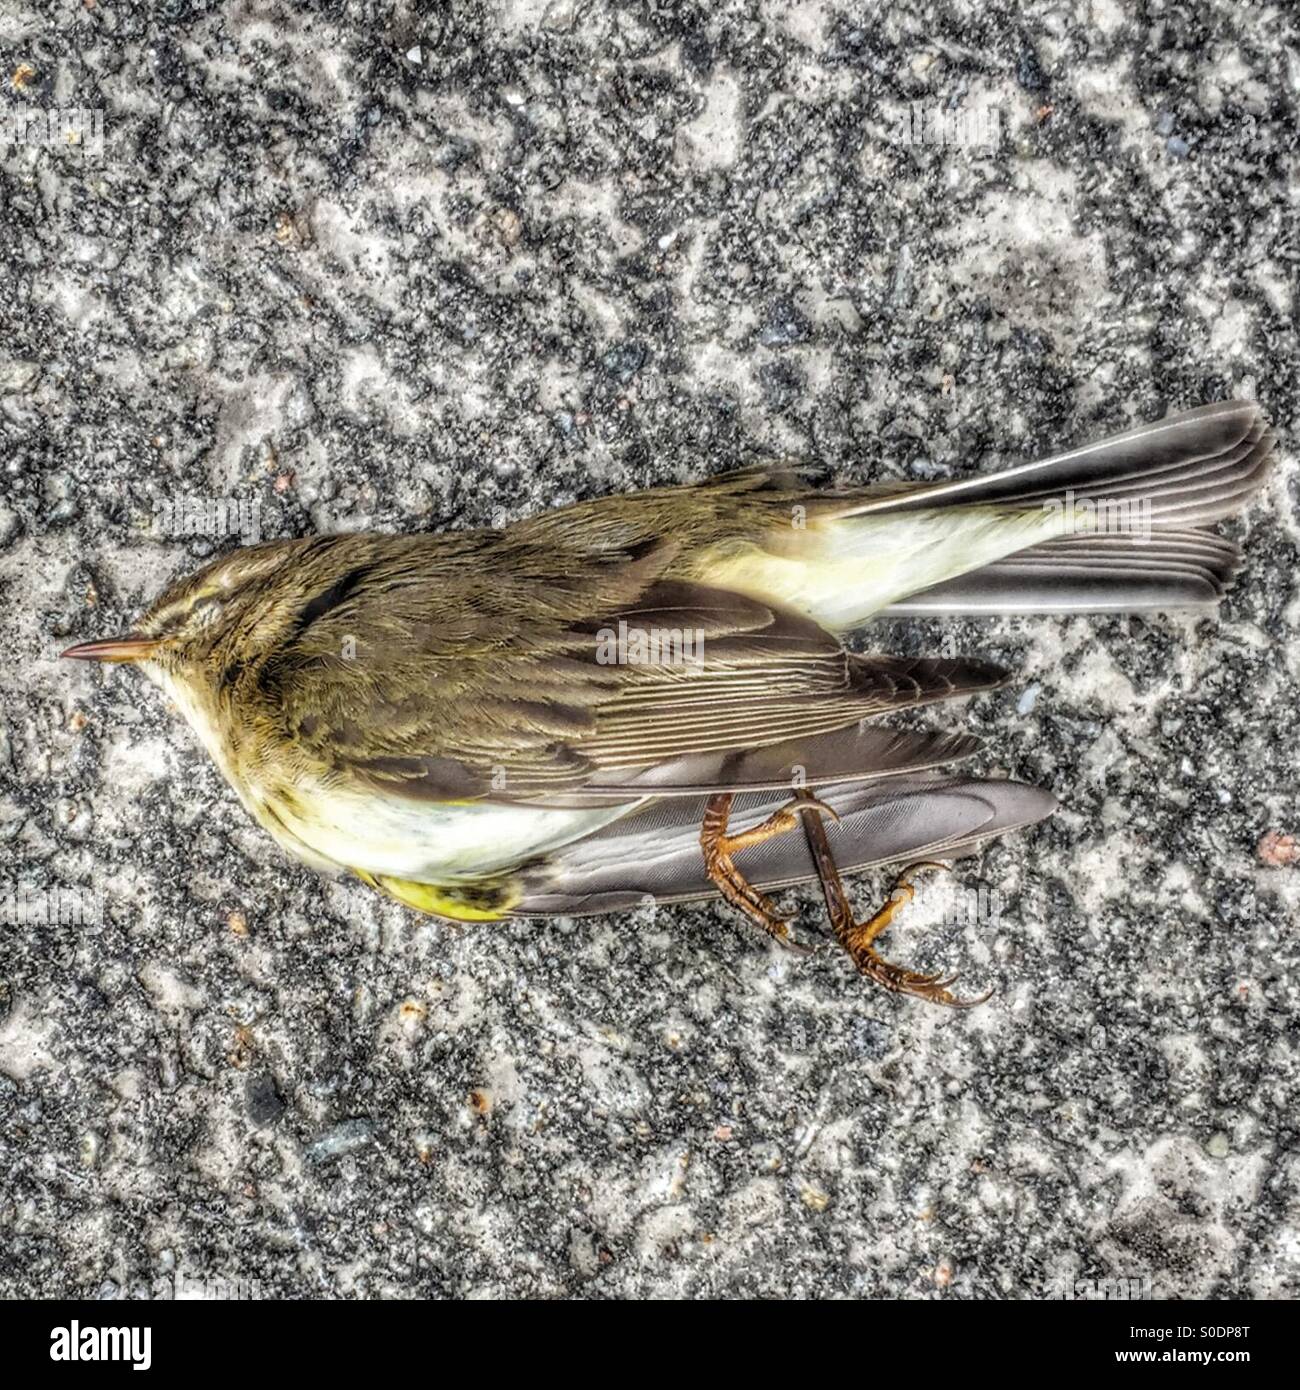 Dead bird Stock Photo